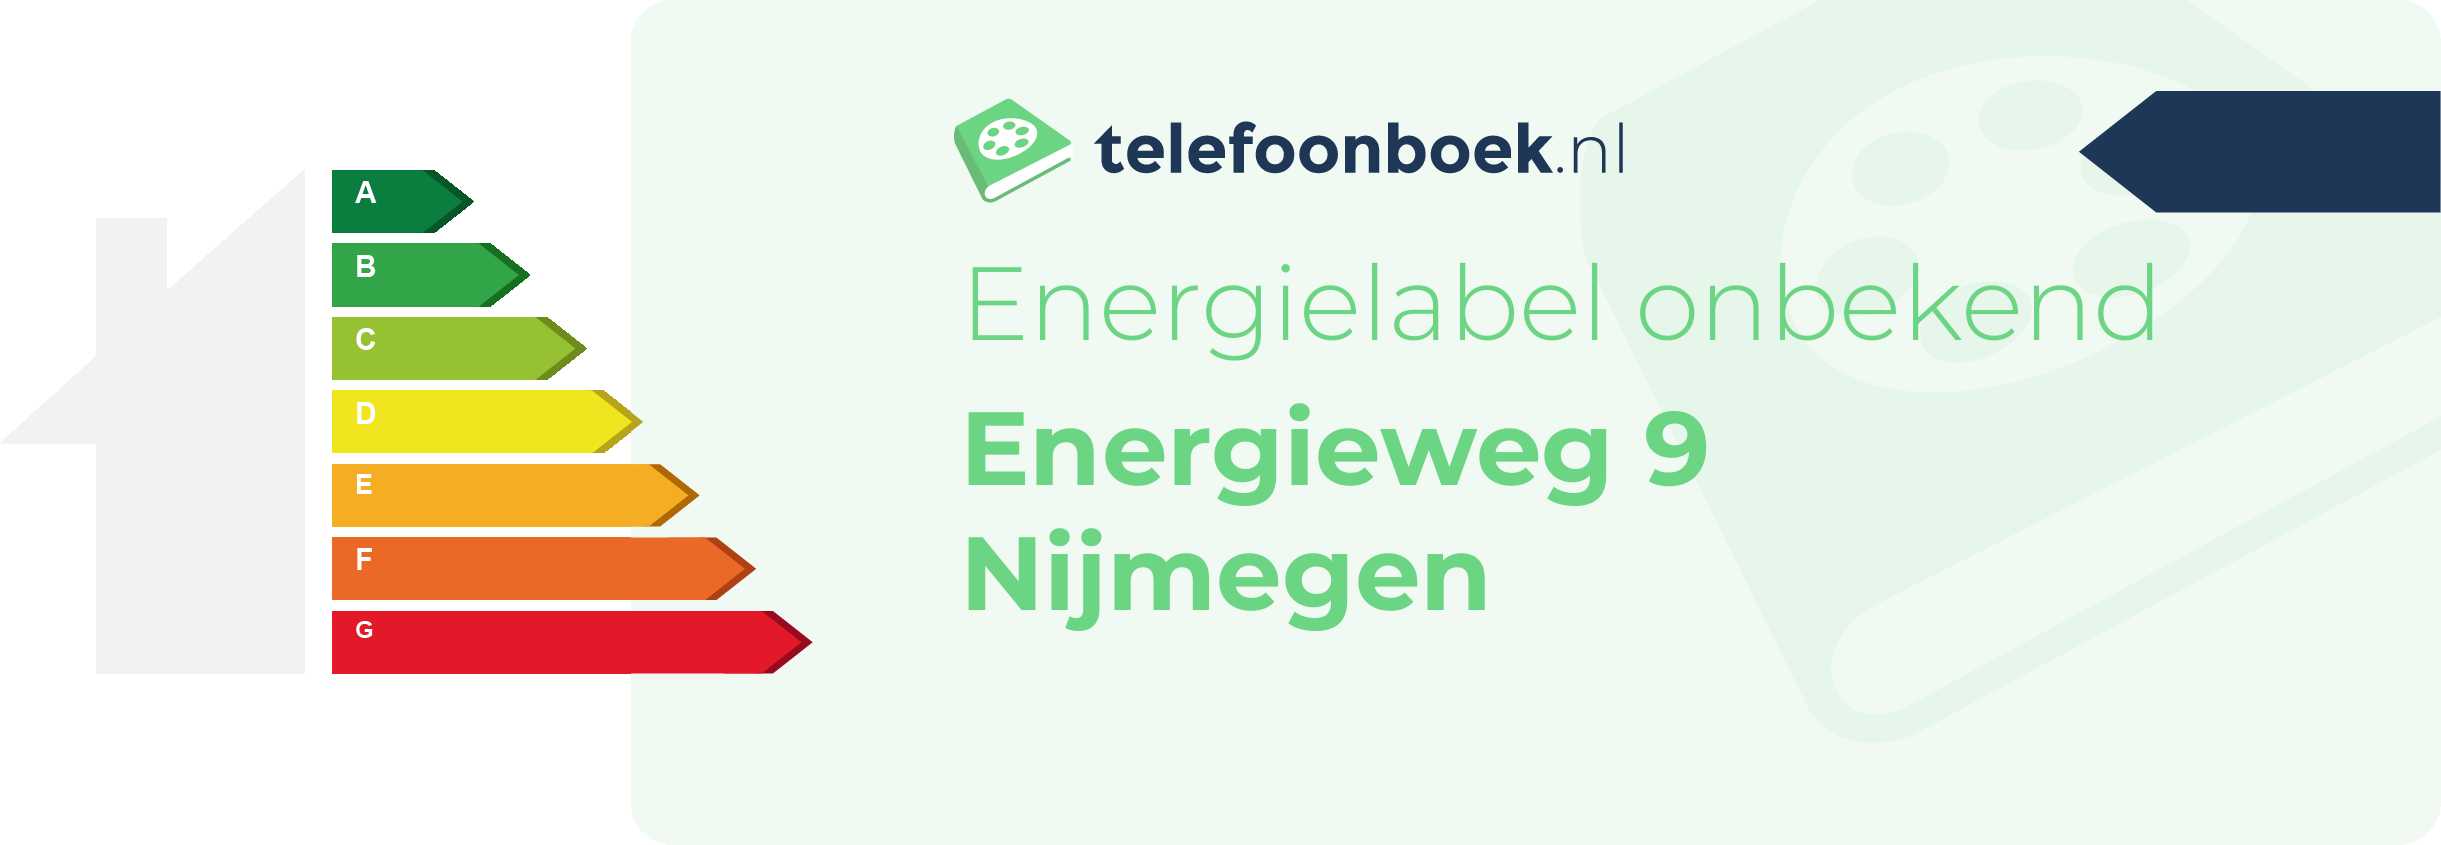 Energielabel Energieweg 9 Nijmegen